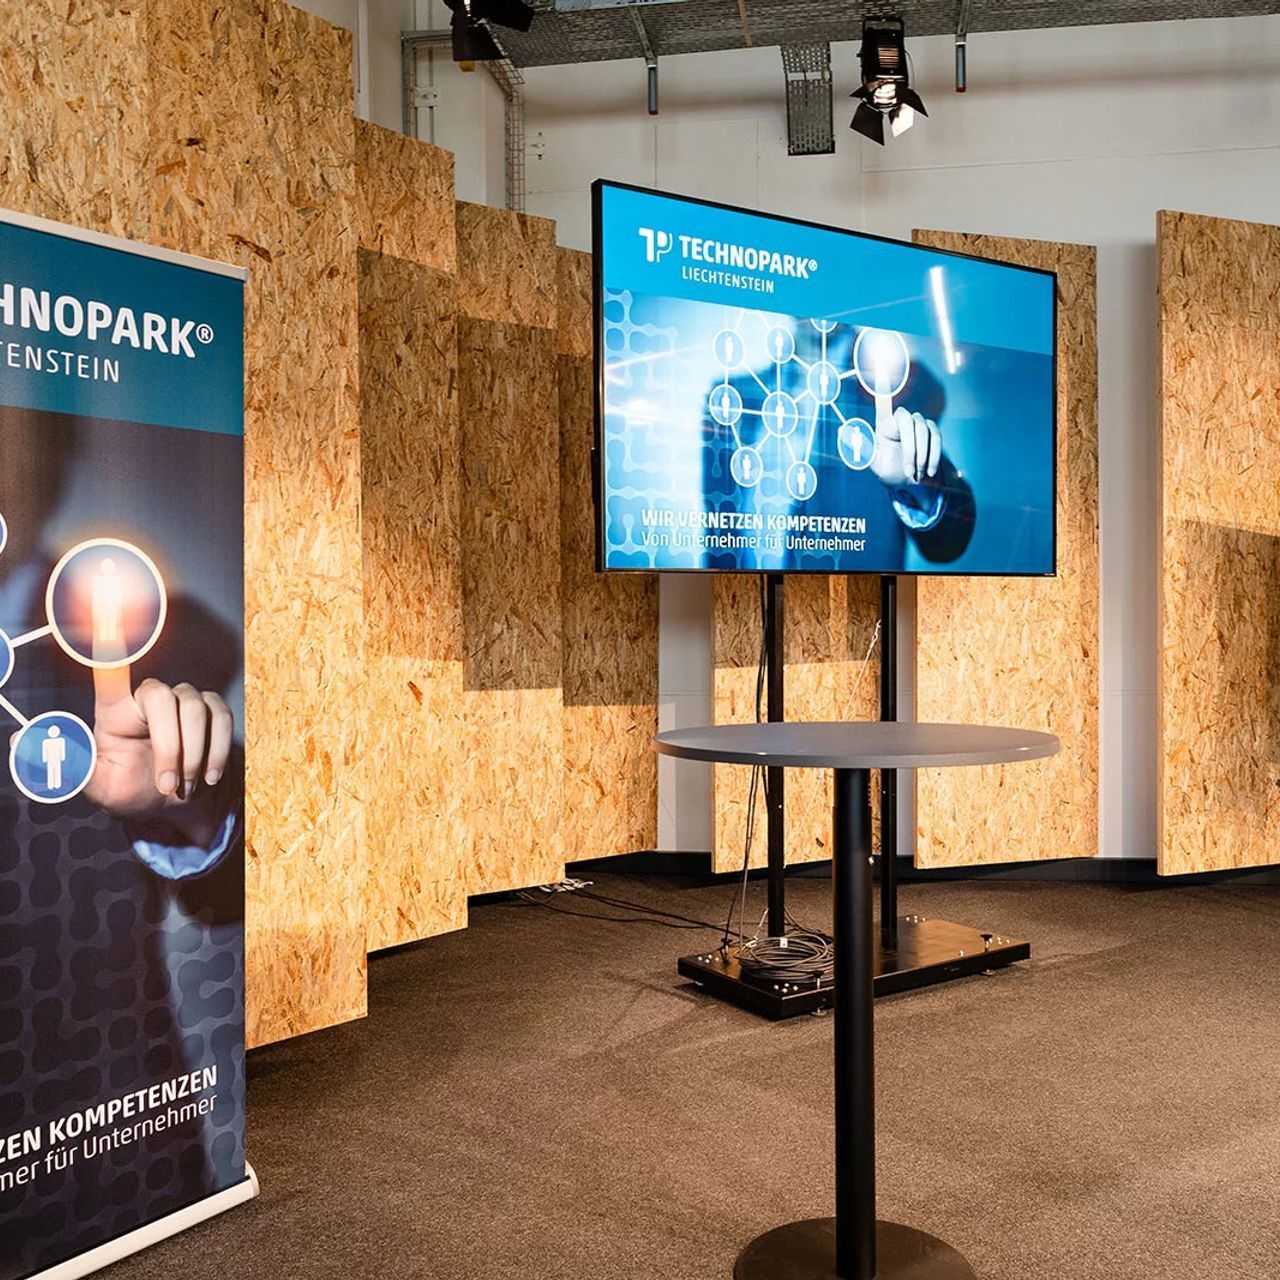 Il Technopark Liechtenstein è un hub tecnologico e un polo d'attrazione per le startup